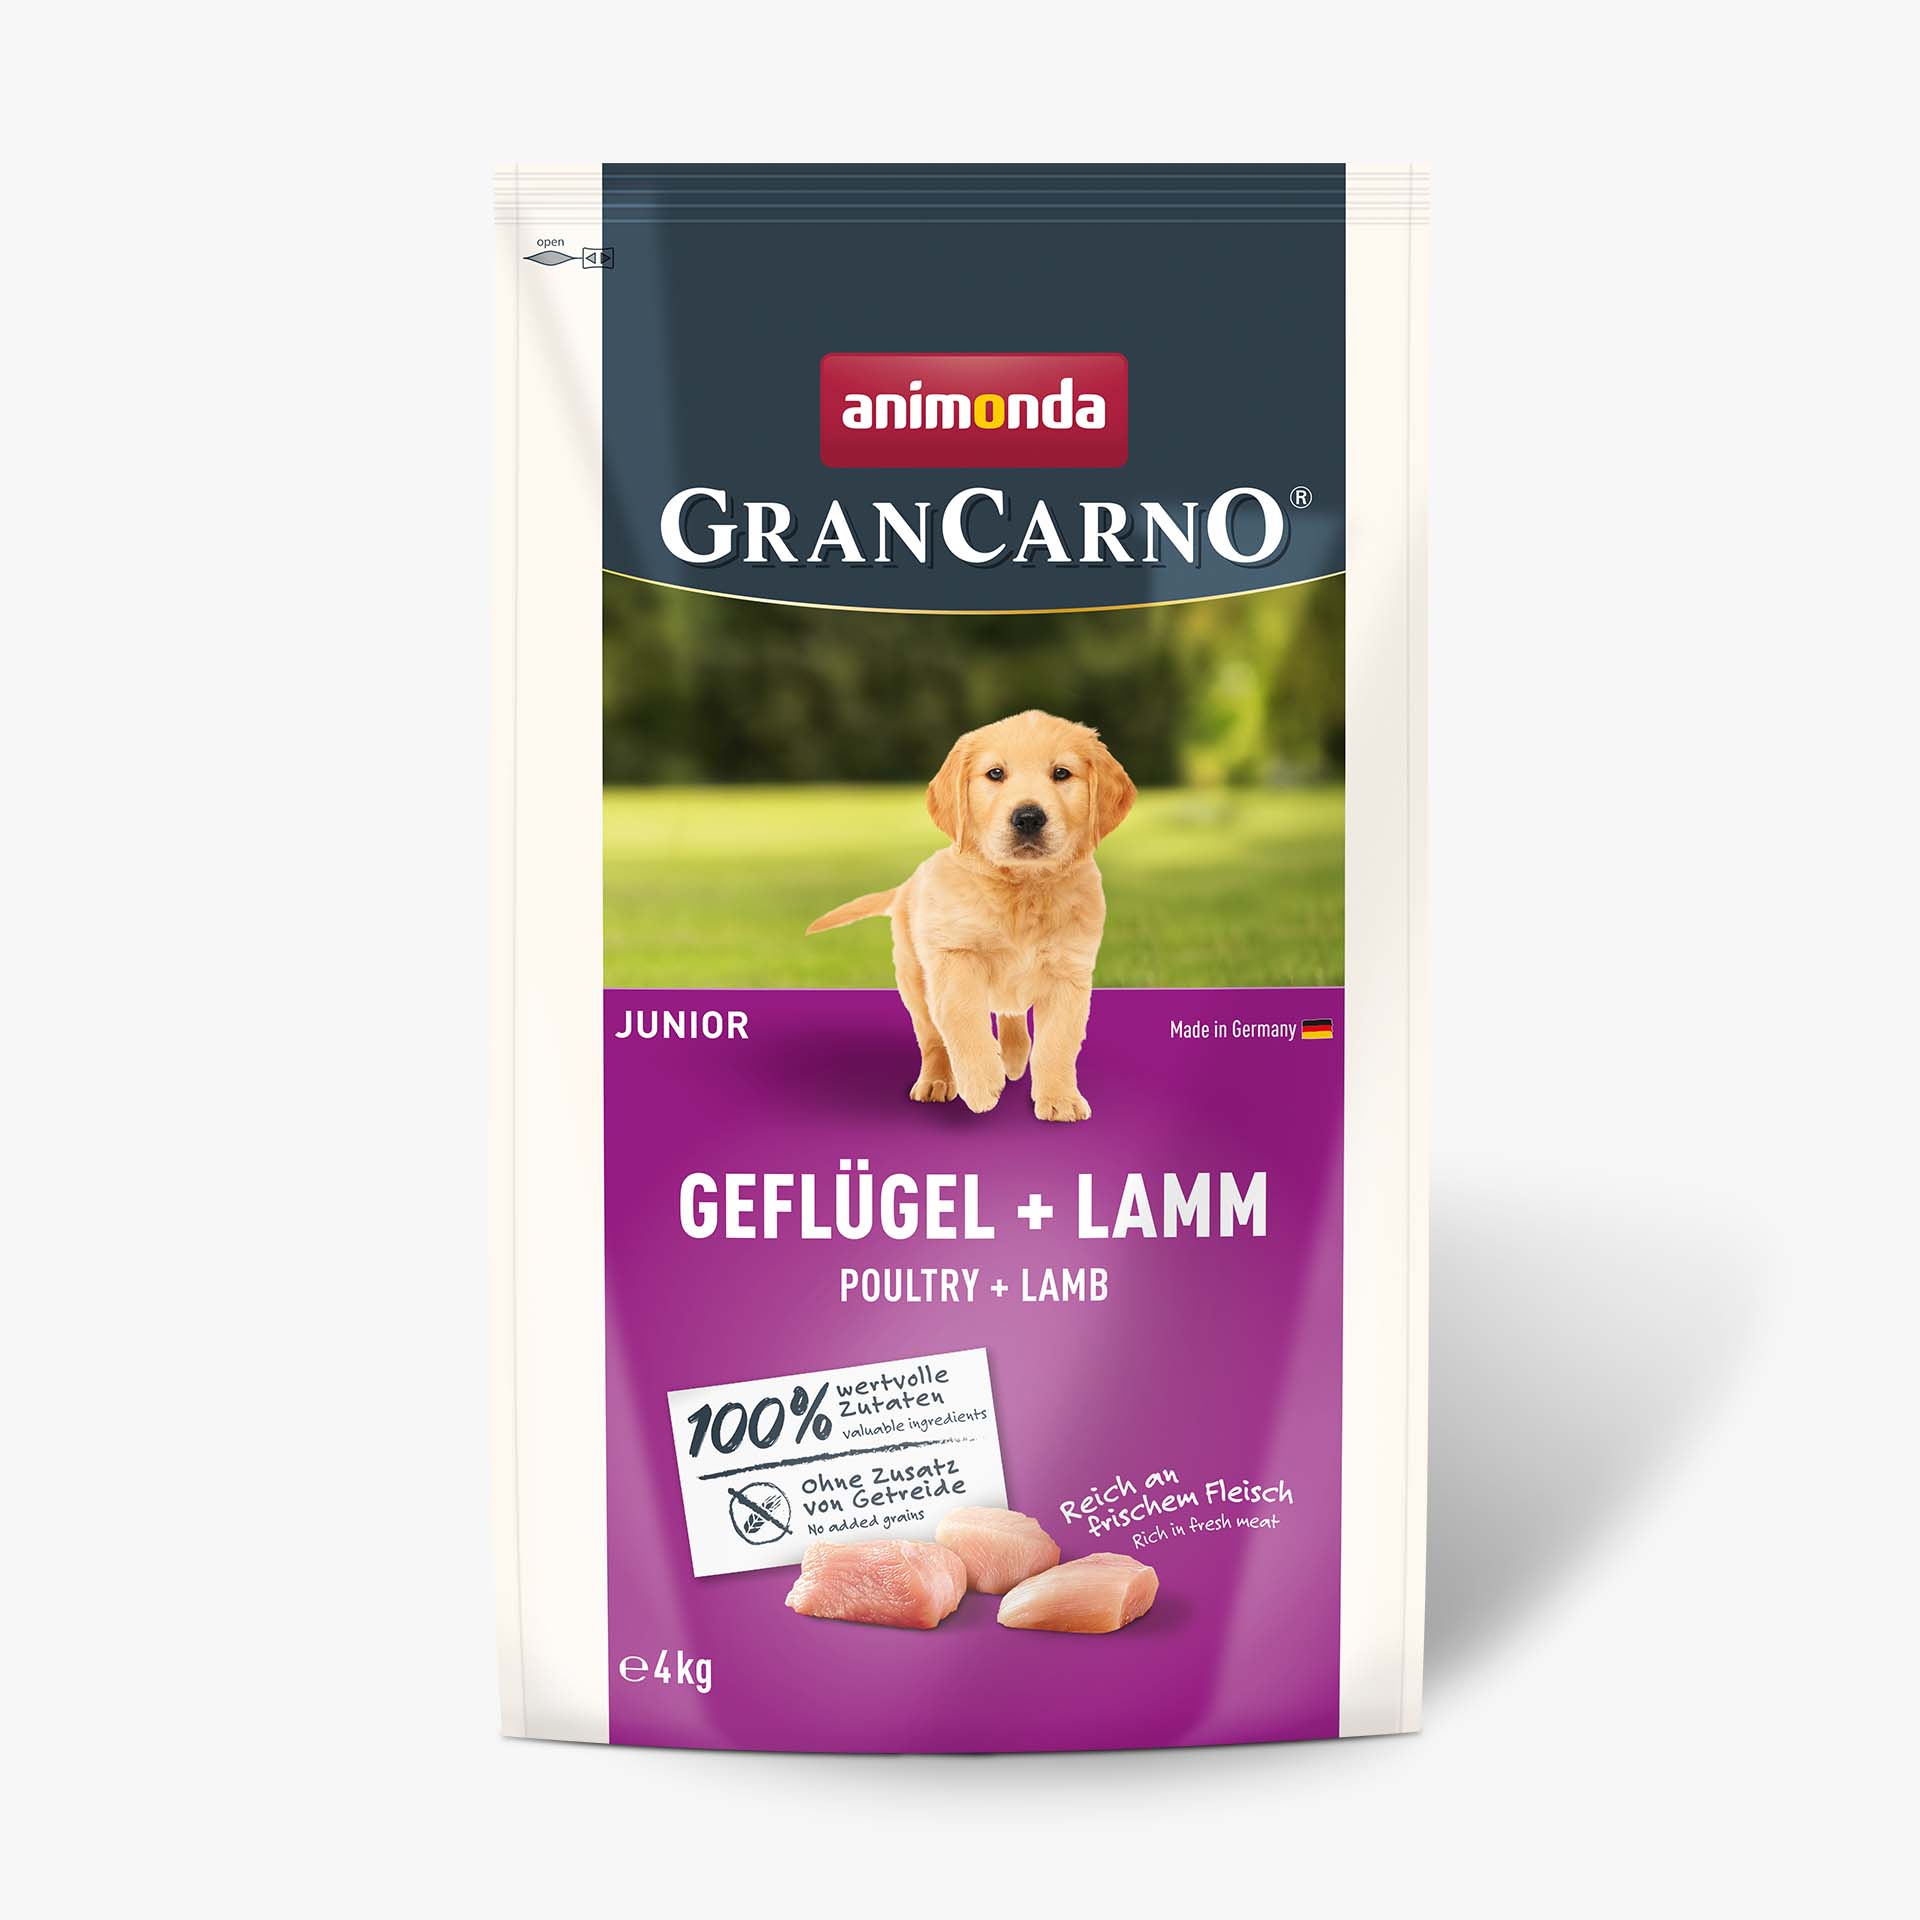 GranCarno Poultry + Lamb 